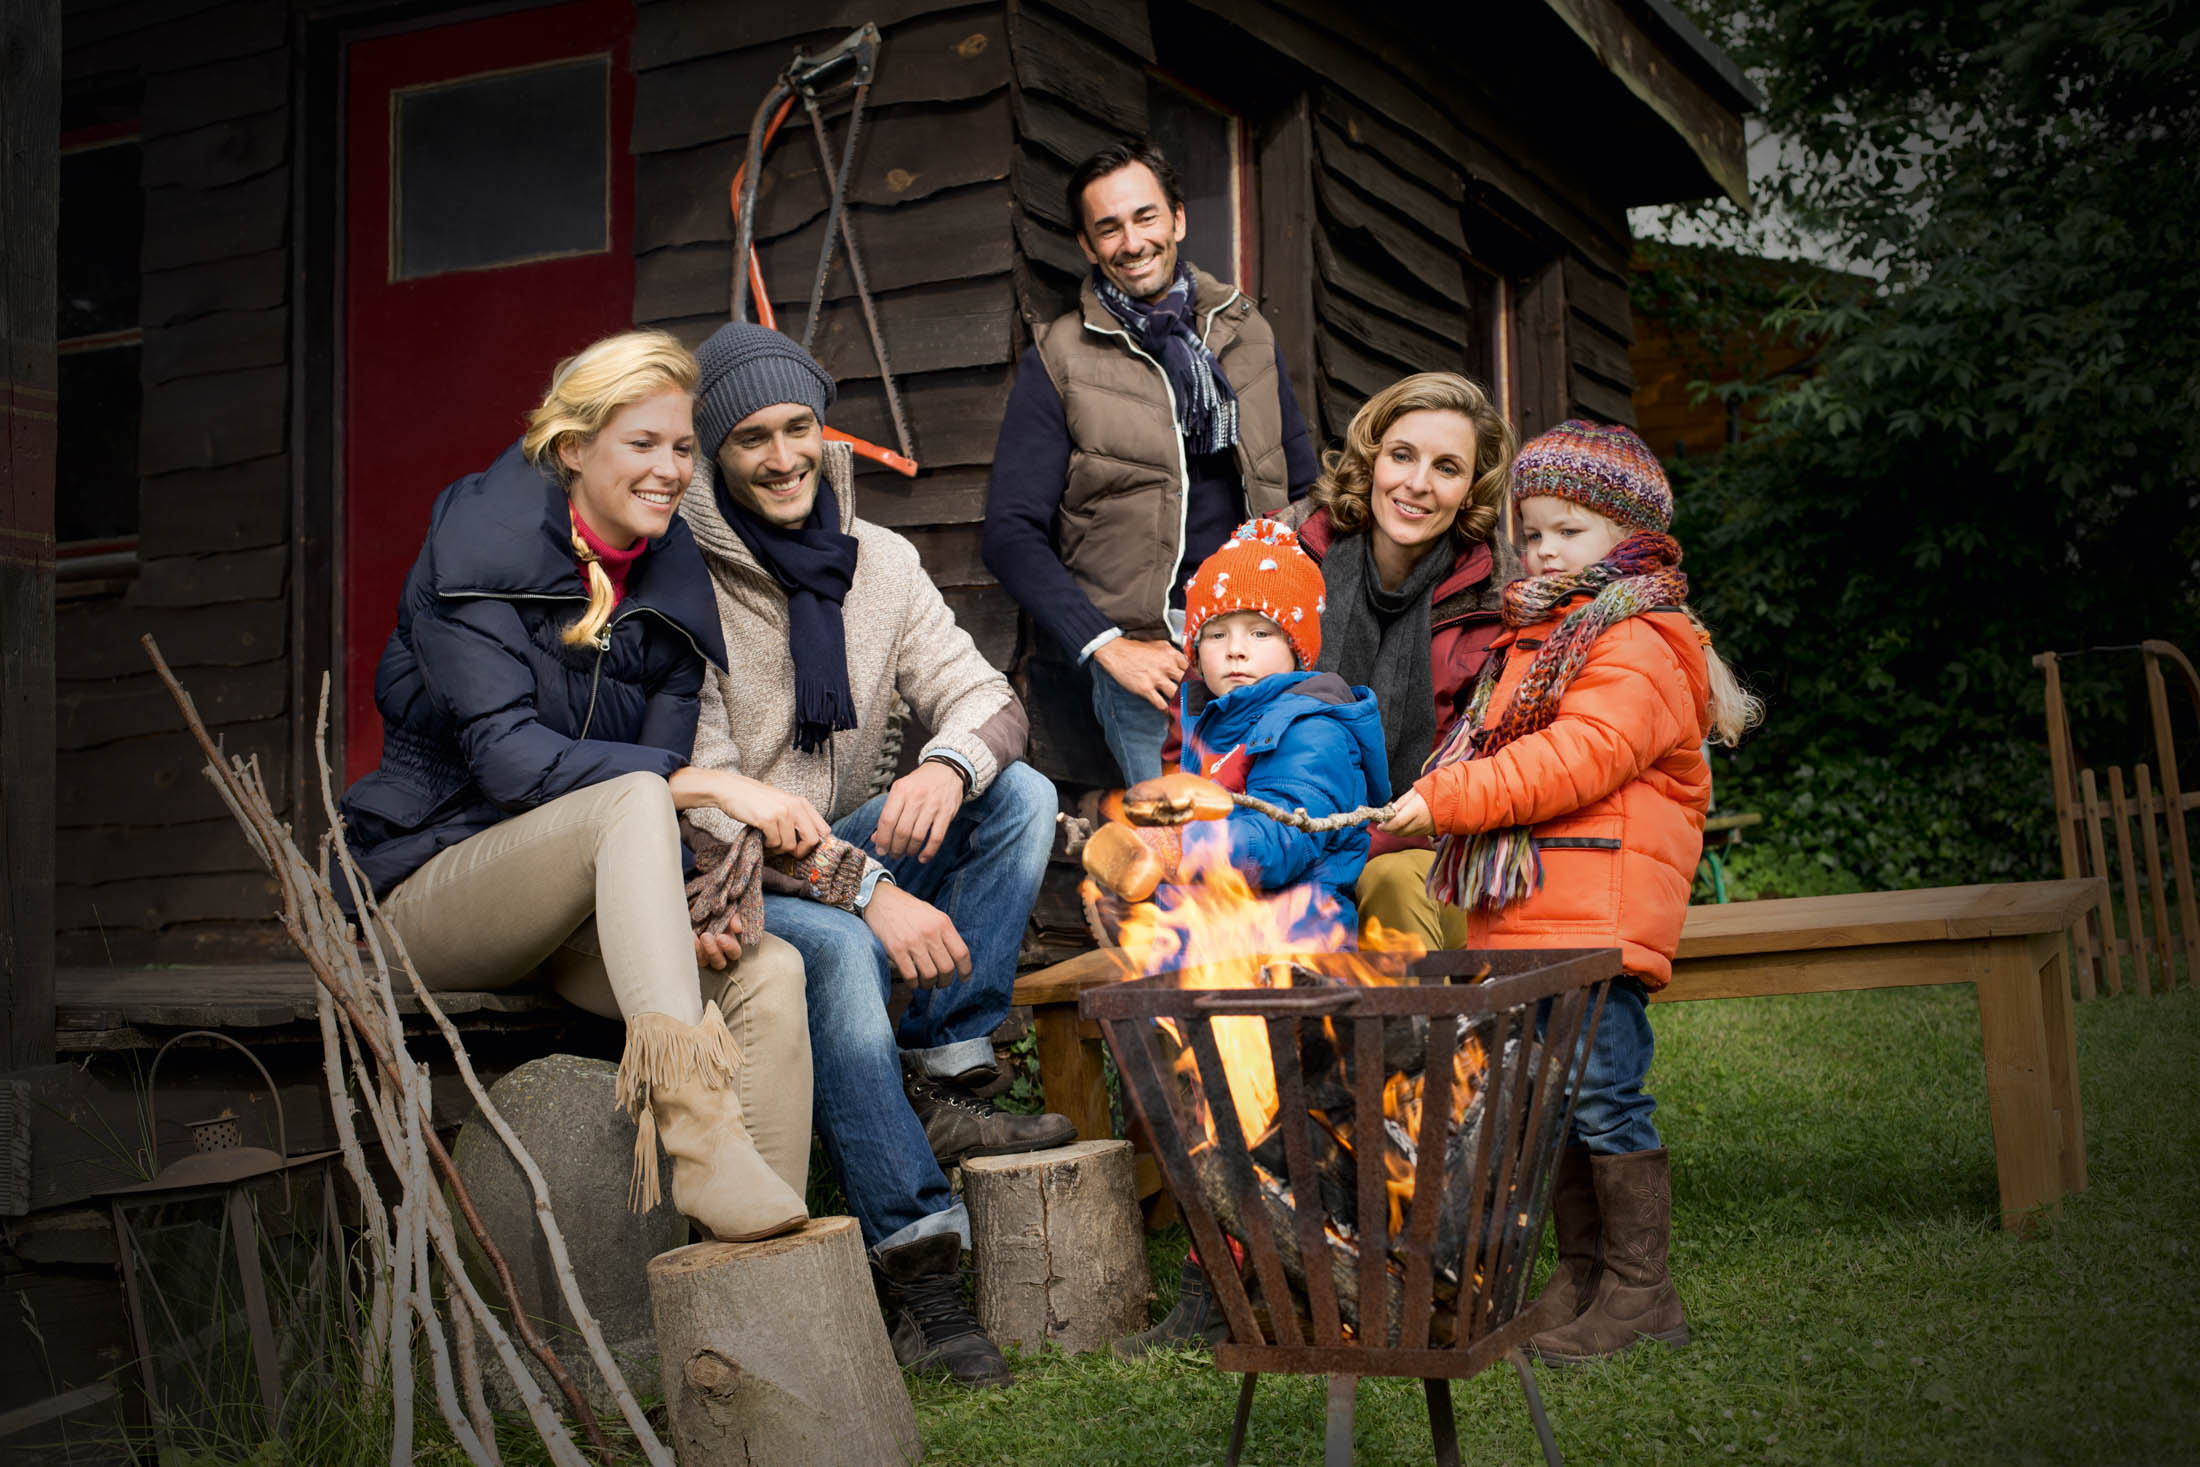 Zwei Familien genießen die Zeit an einer Feuerstelle vor einer Hütte. Die Erwachsenen lächeln, die Kinder sind warm angezogen. Natürliche Umgebung mit grünem Gras und Bäumen im Hintergrund. © Fotografie Tomas Rodriguez